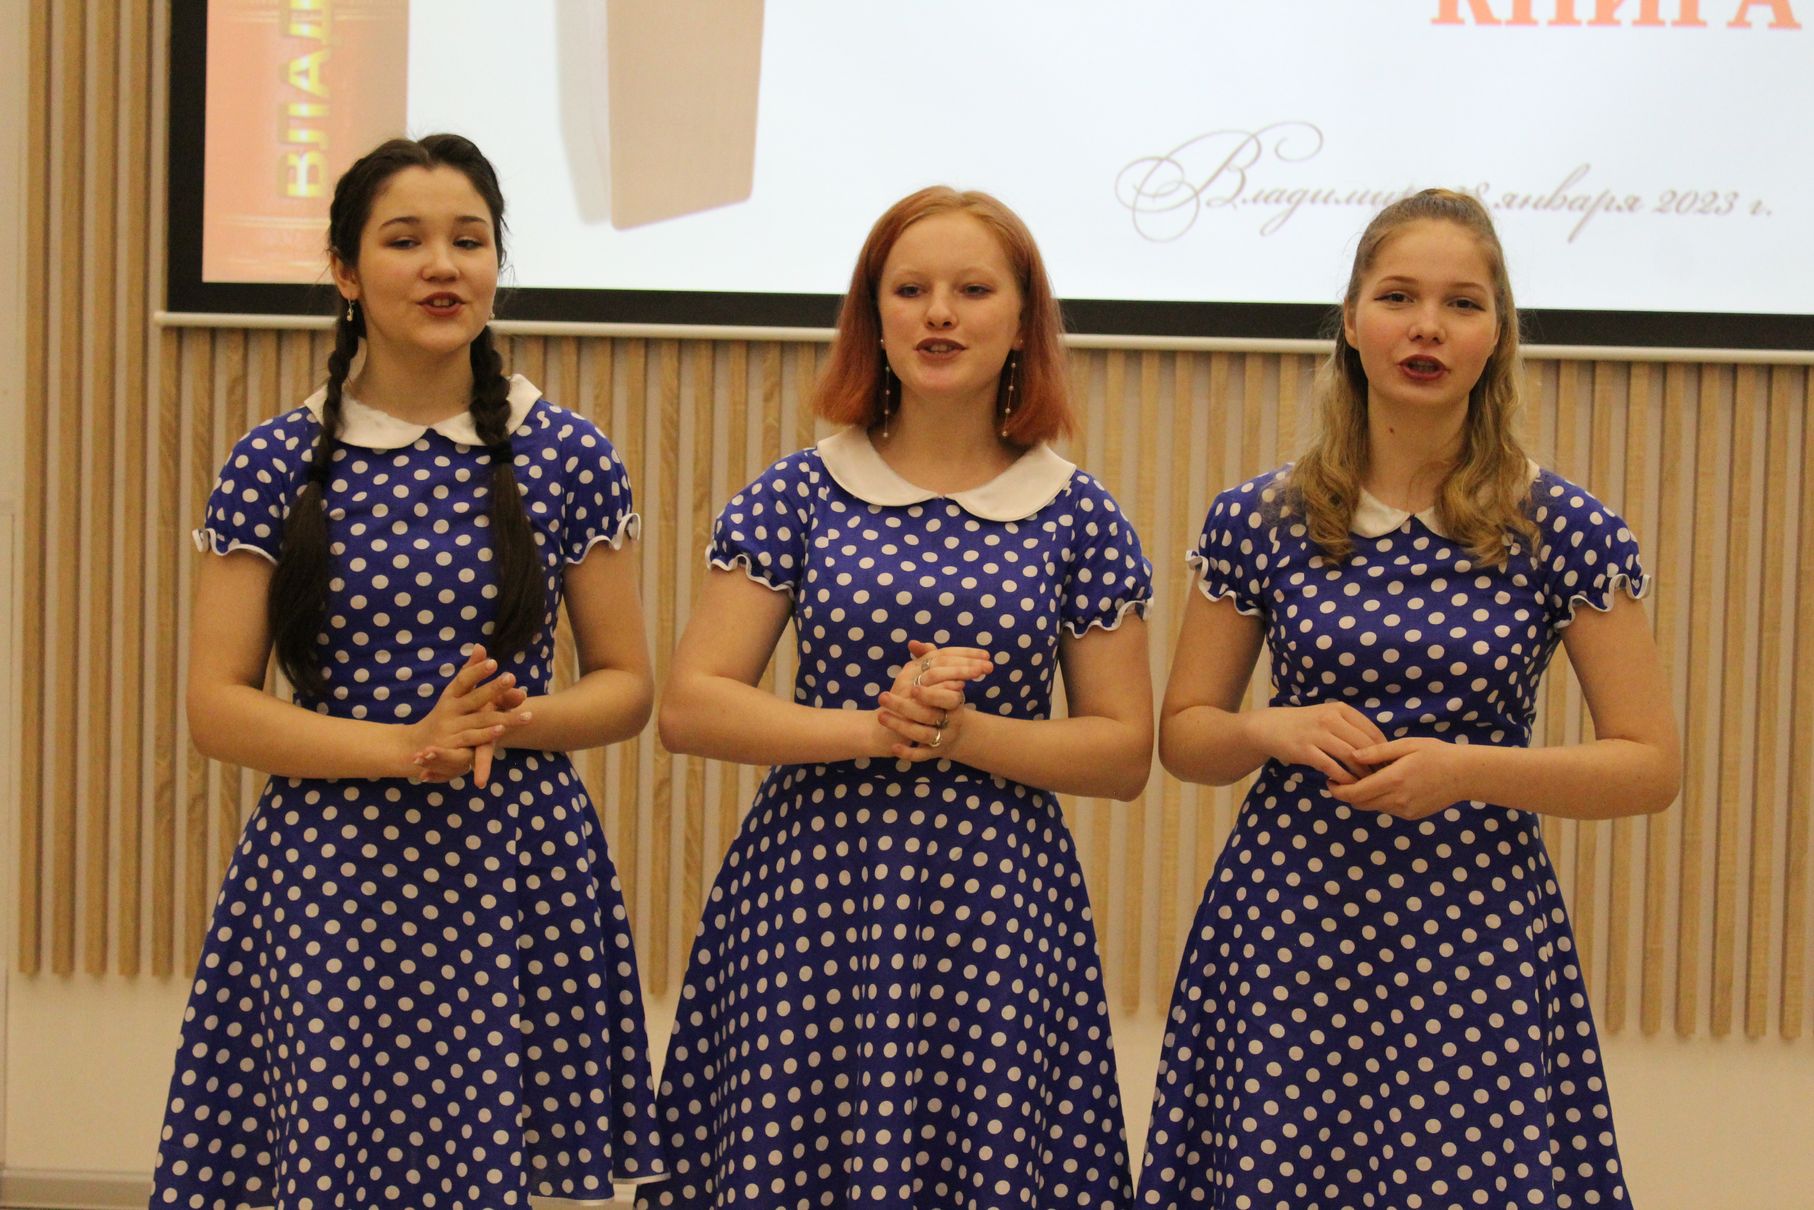 Участницы вокального трио с песней "Девчонки танцуют на палубе"